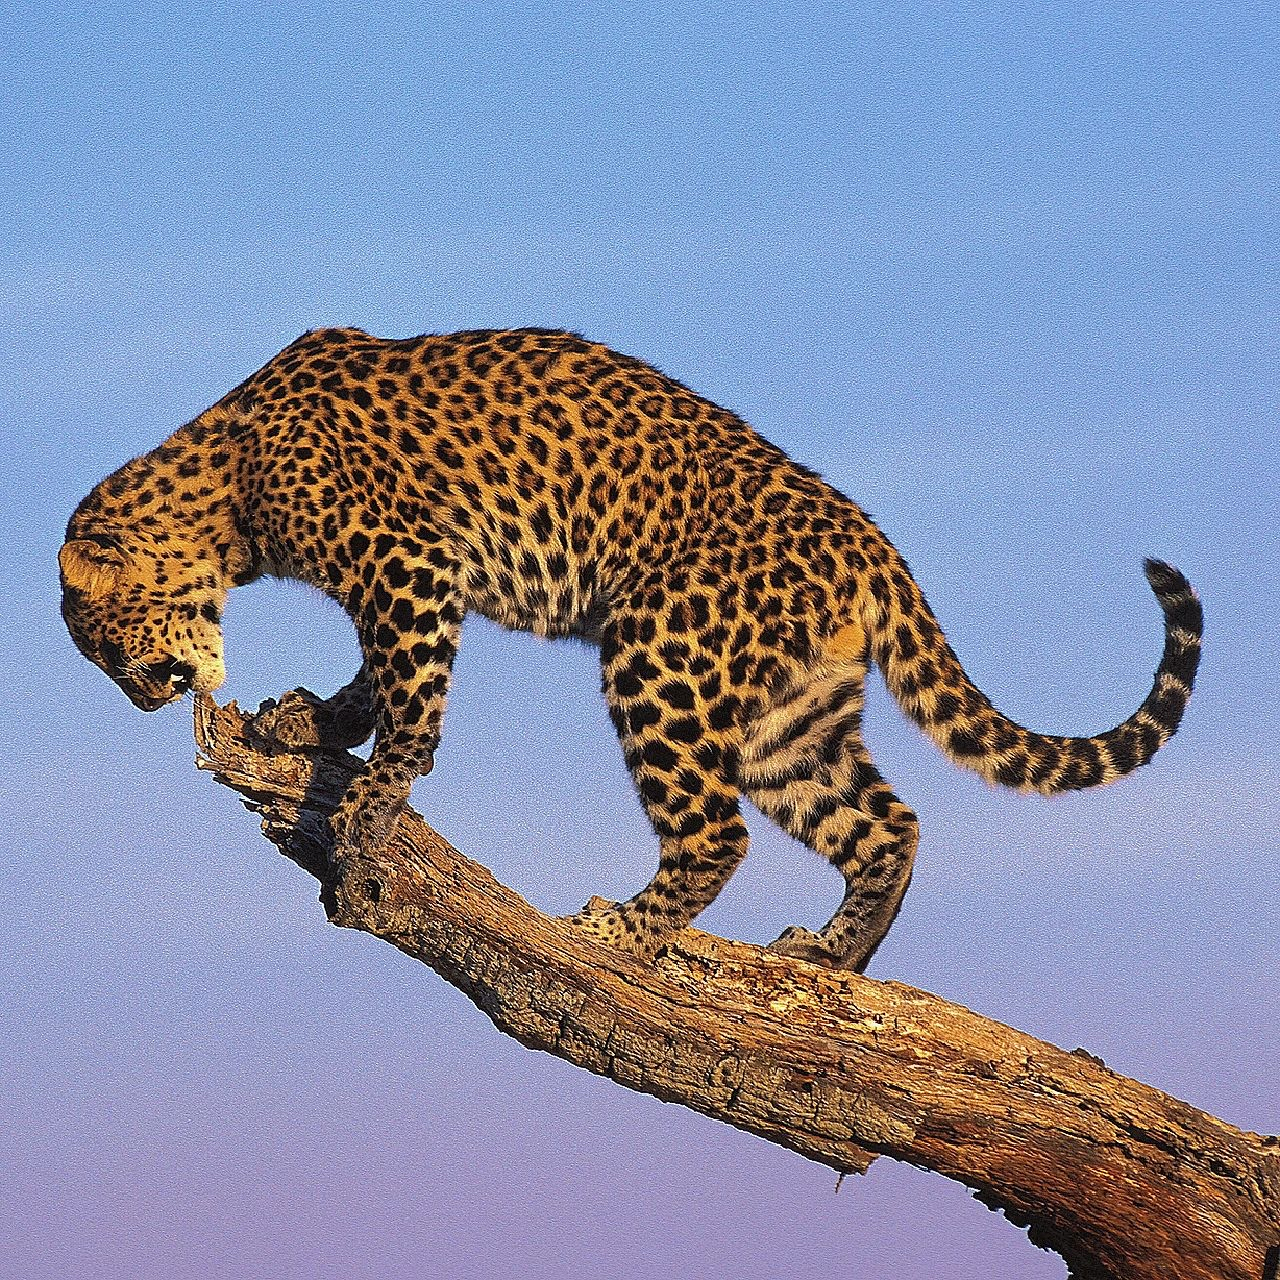 花豹,豹属的大型肉食性动物,花豹头部的斑点小而密,背部的斑点密而较